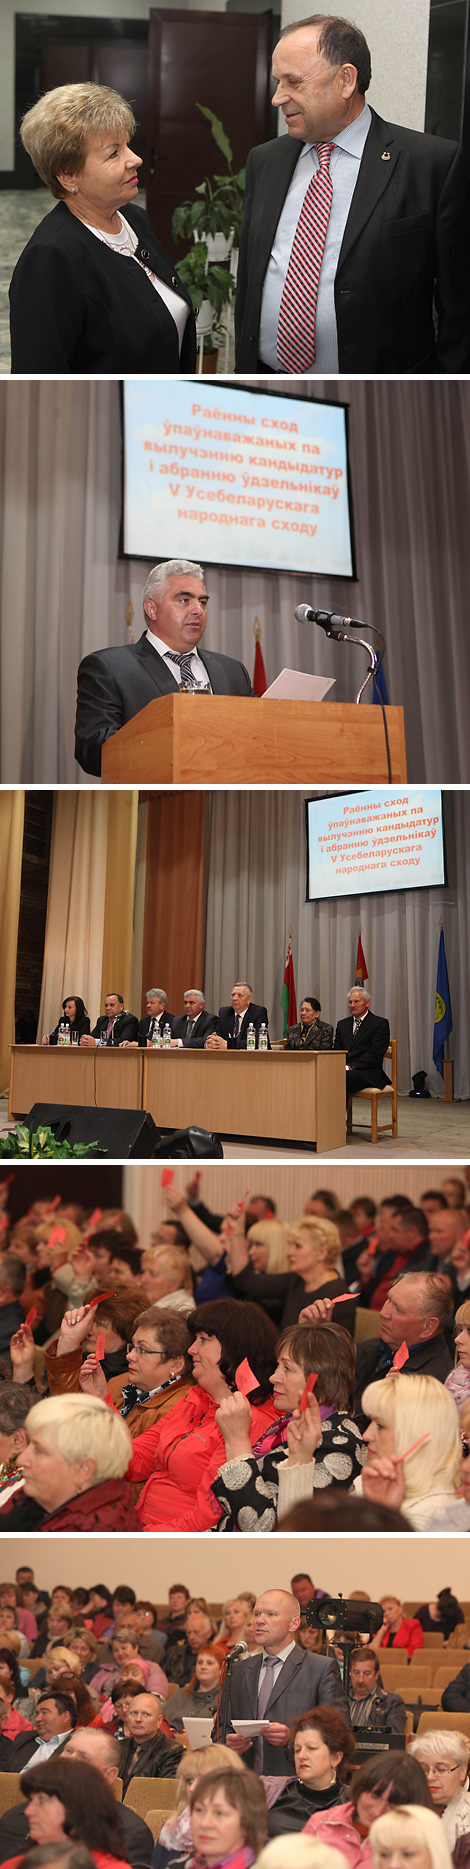 Пять делегатов представят Круглянский район Могилевской области на Всебелорусском народном собрании